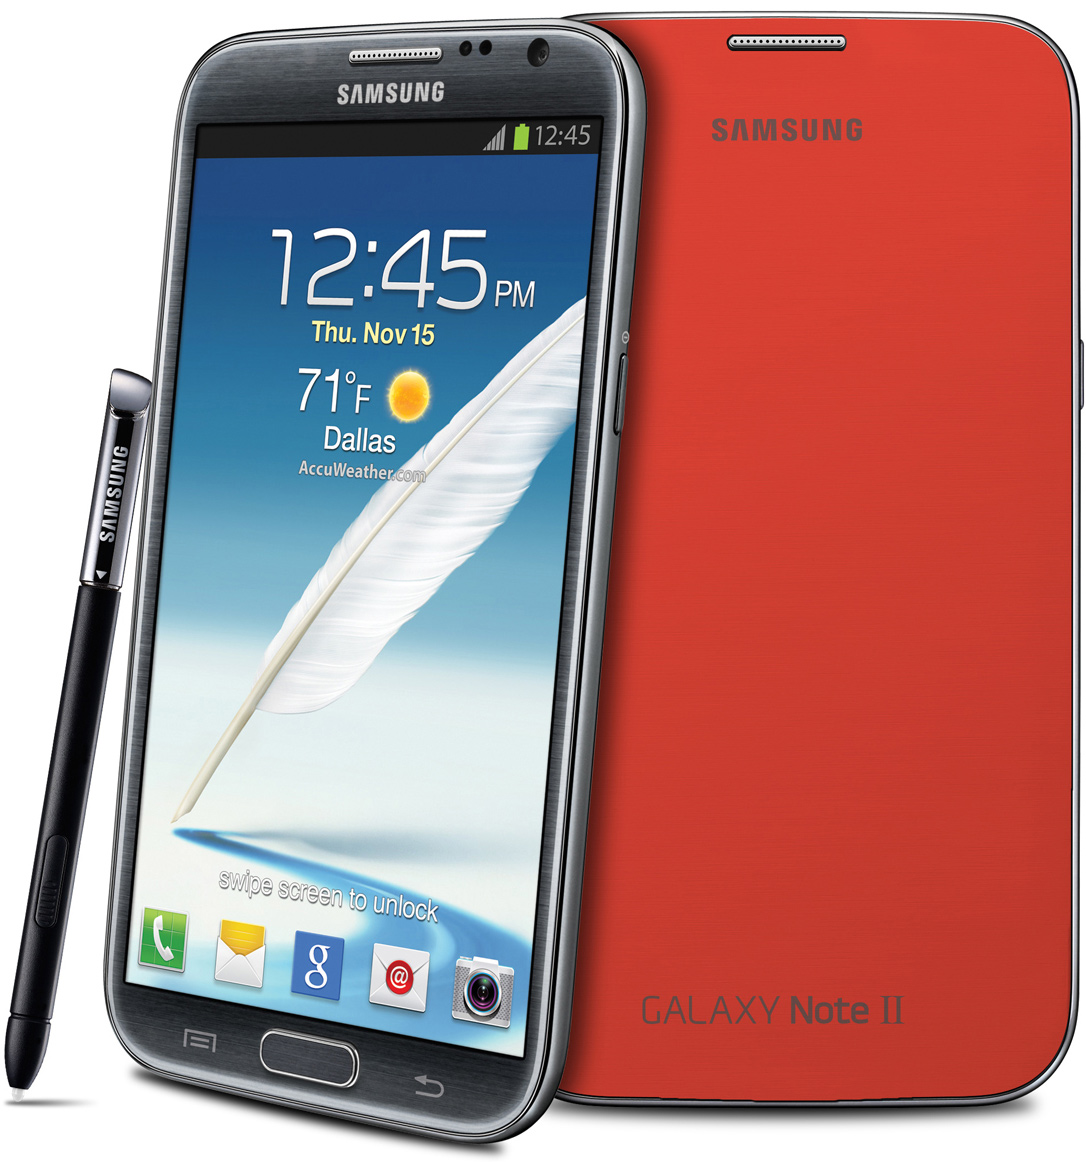 Sprint Samsung Galaxy Note 2 Update Download